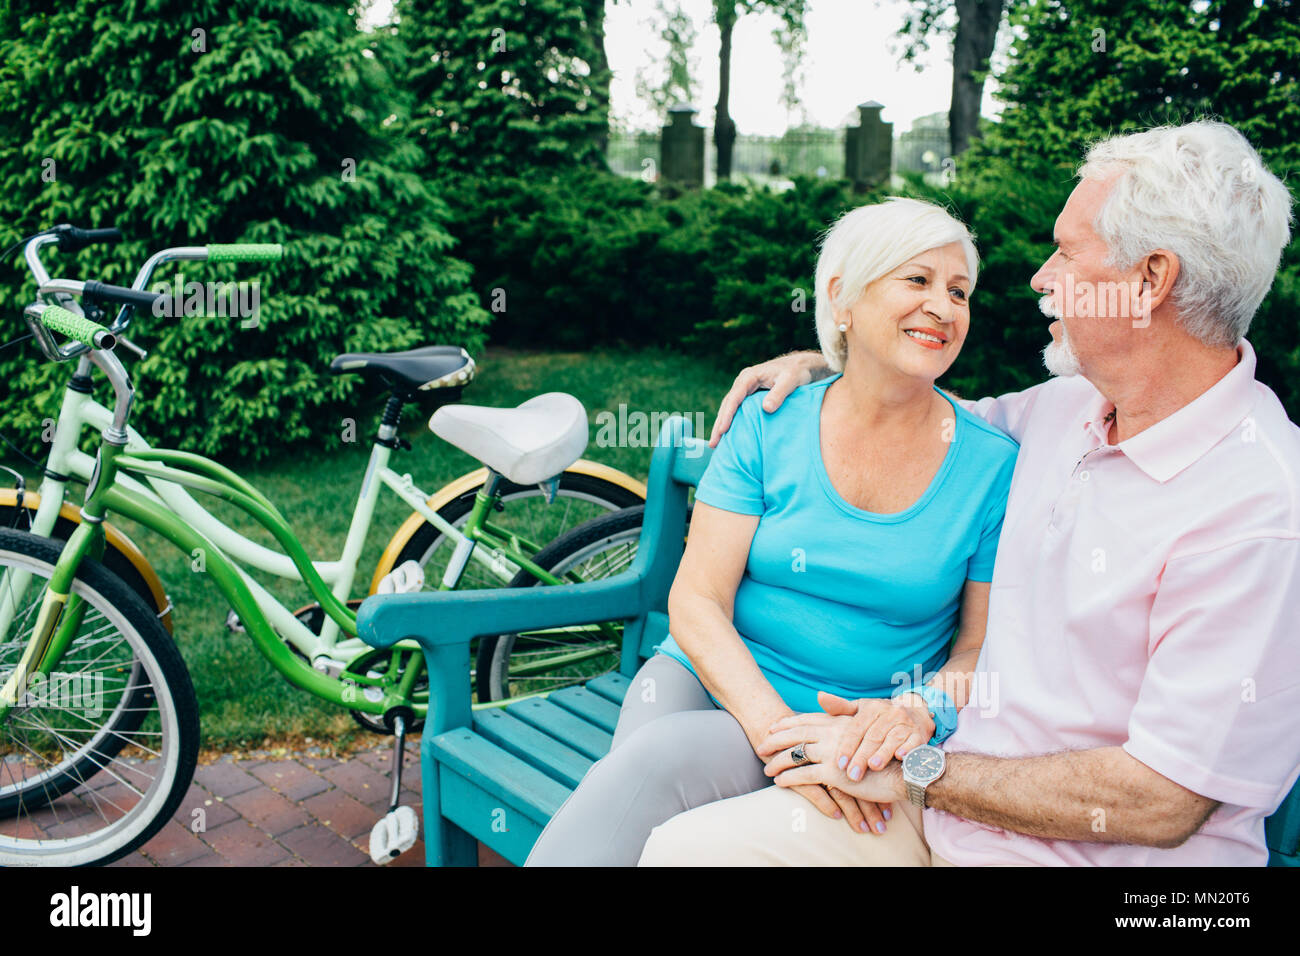 Senior couple relaxing, assis sur parc, après la bicyclette. Une femme et un homme âgés participent activement à la retraite, au repos Banque D'Images